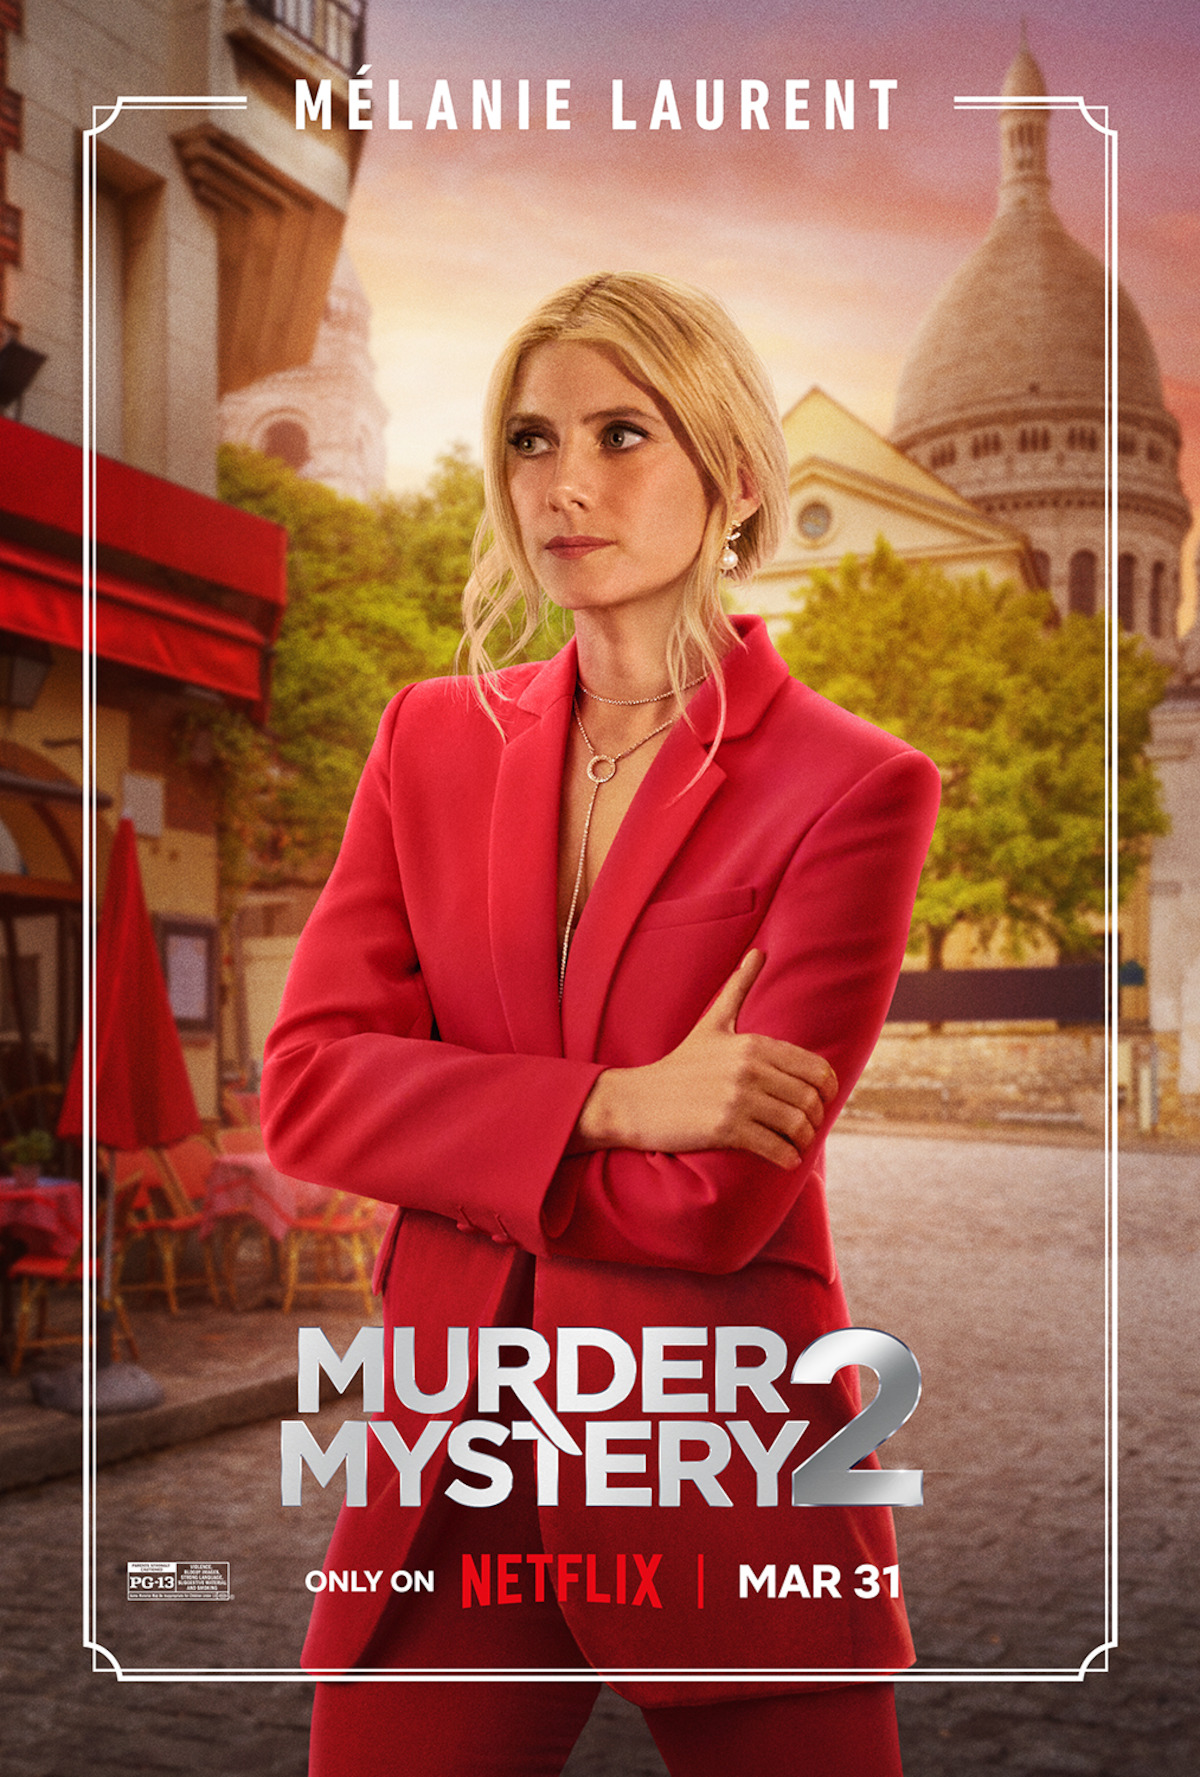 Murder Mystery 2 MOVIE!? 